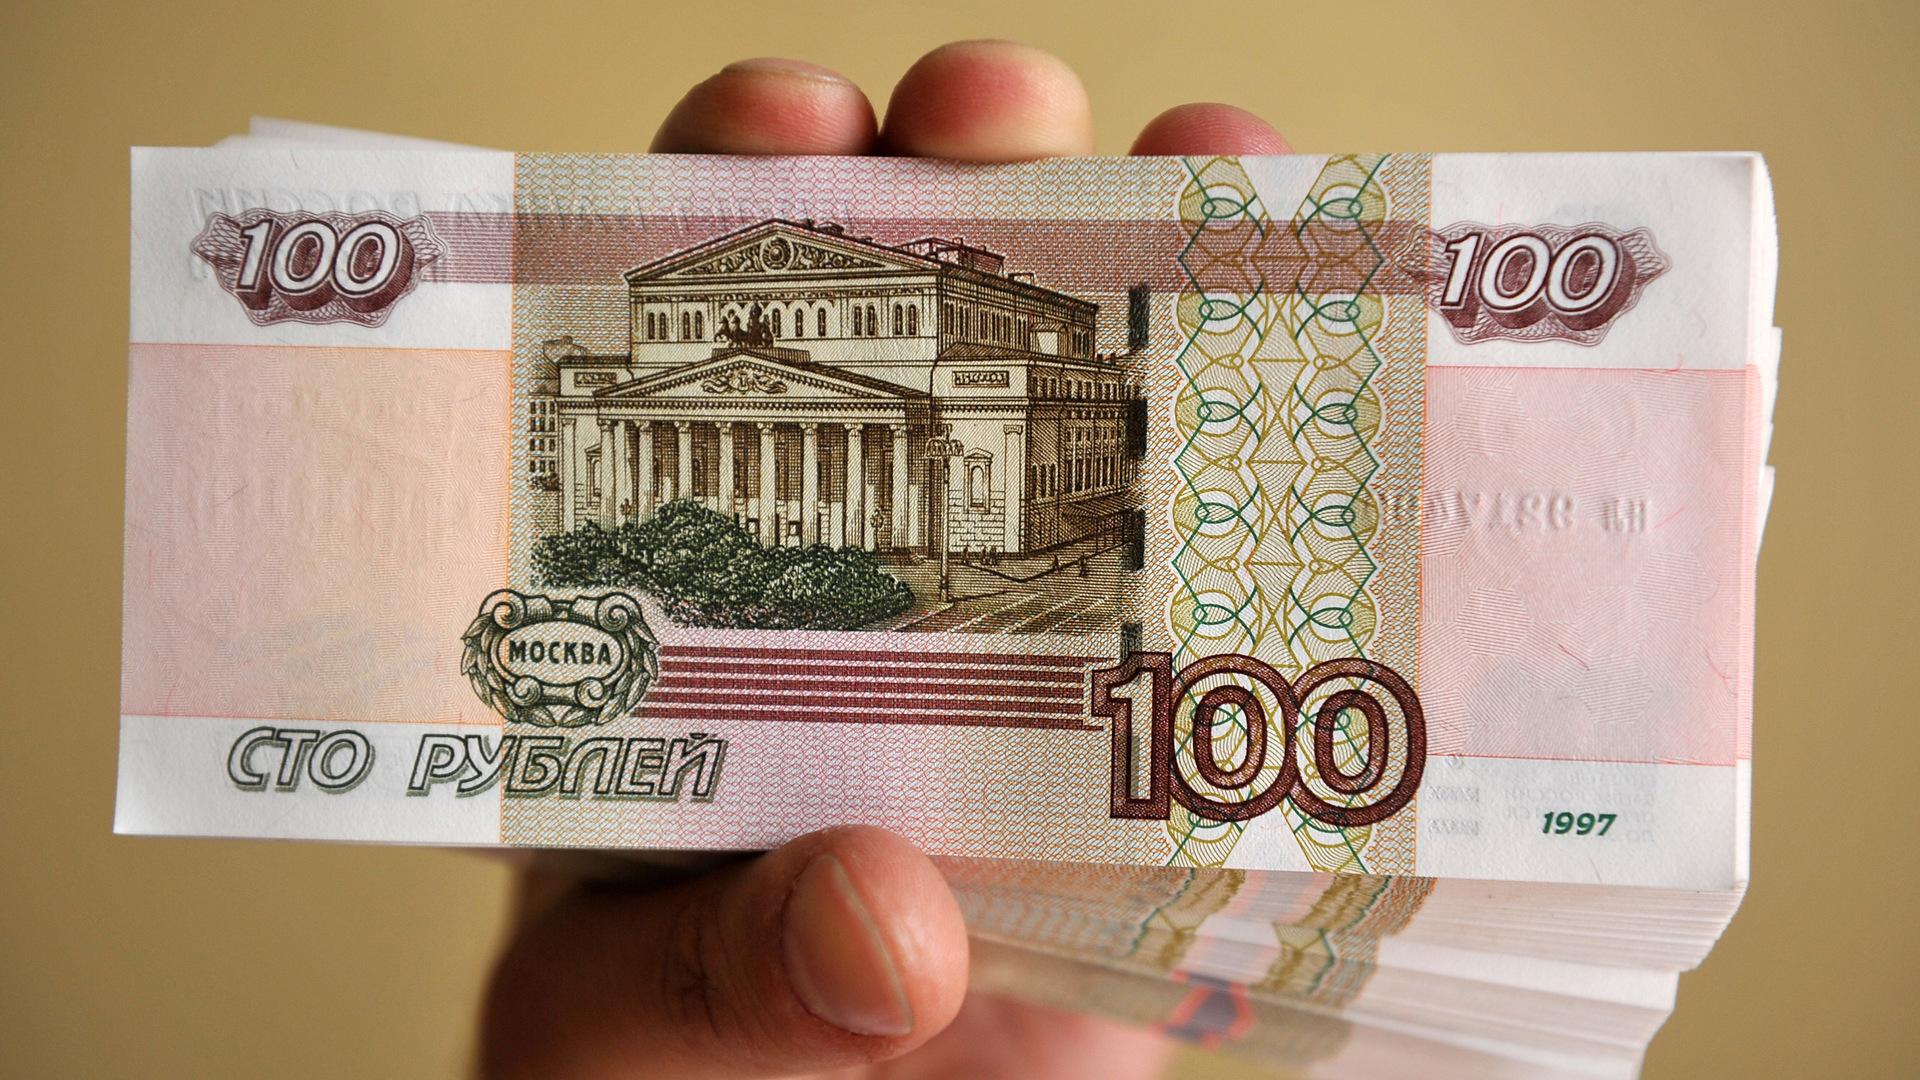 100 Рублей город на купюре